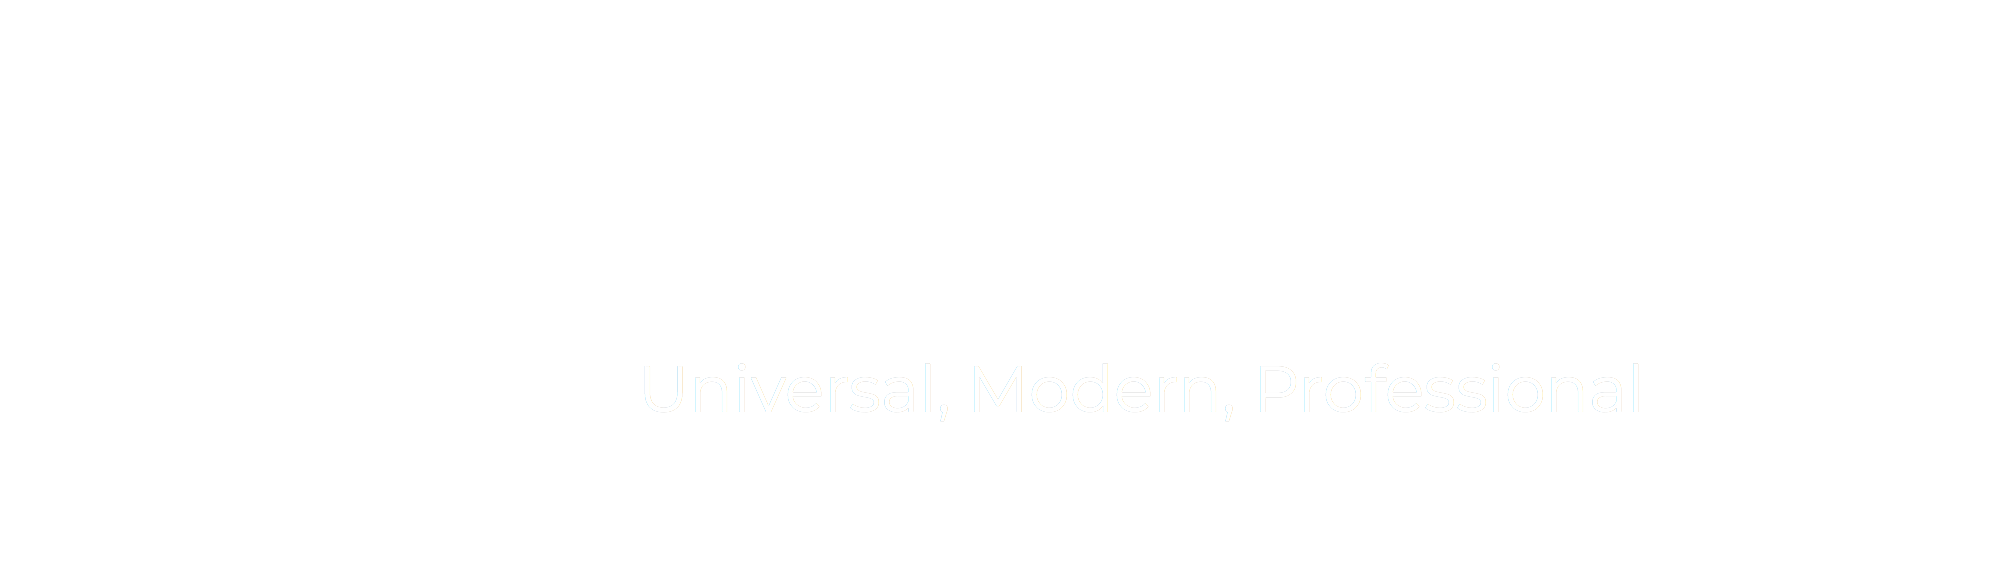 Spiral Register